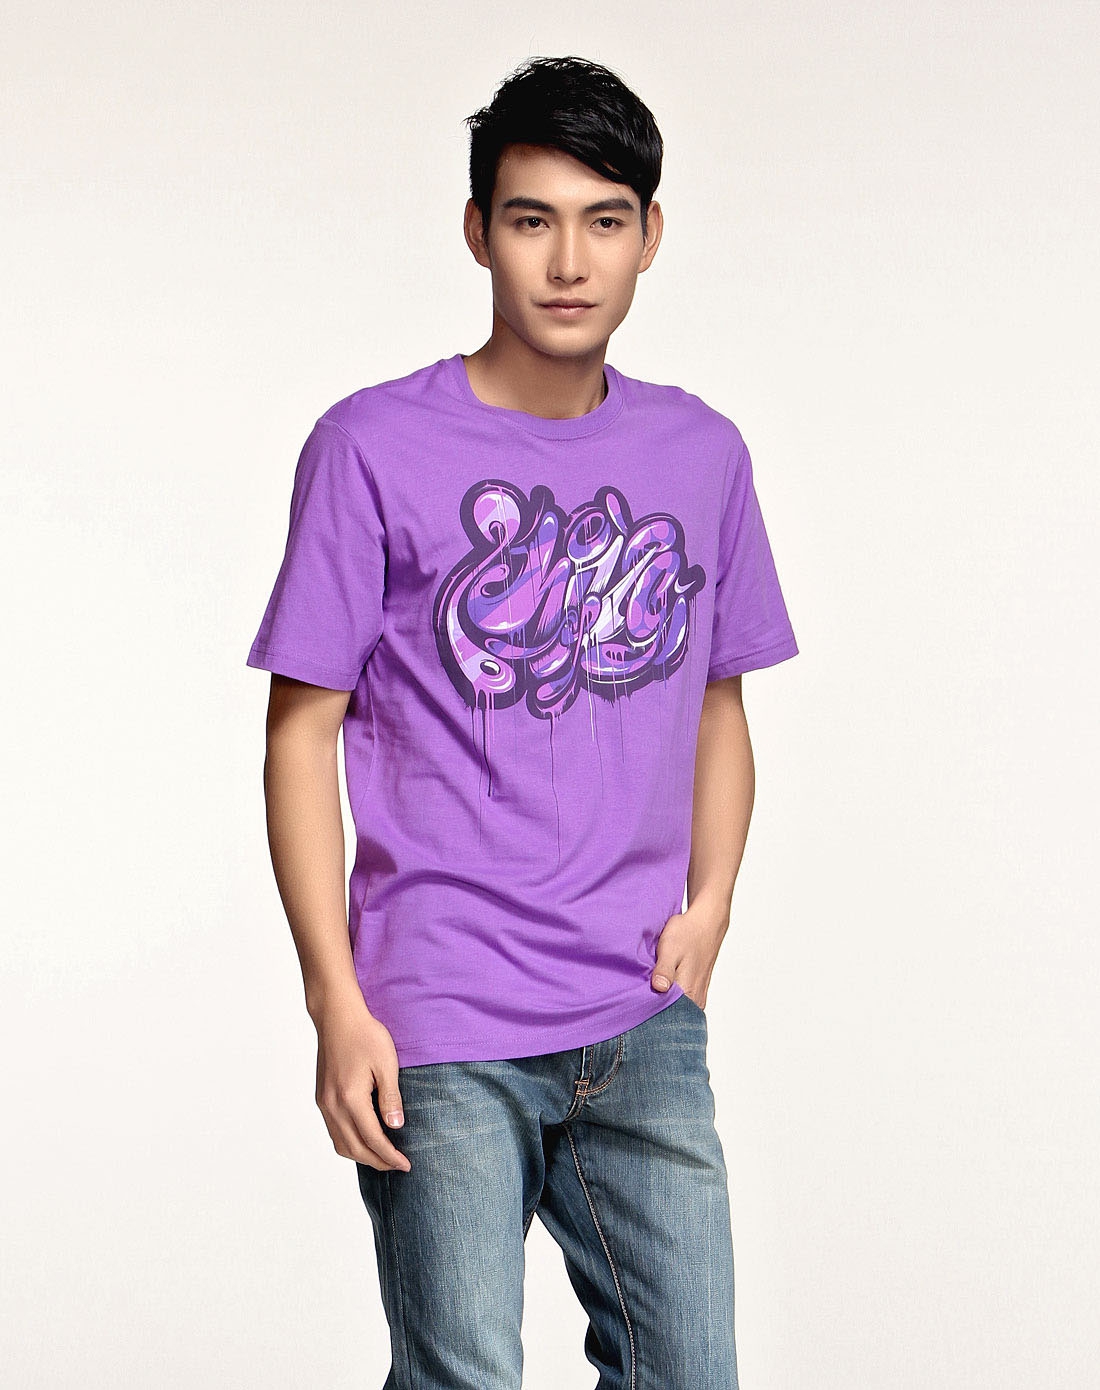 男子浅紫色短袖t恤